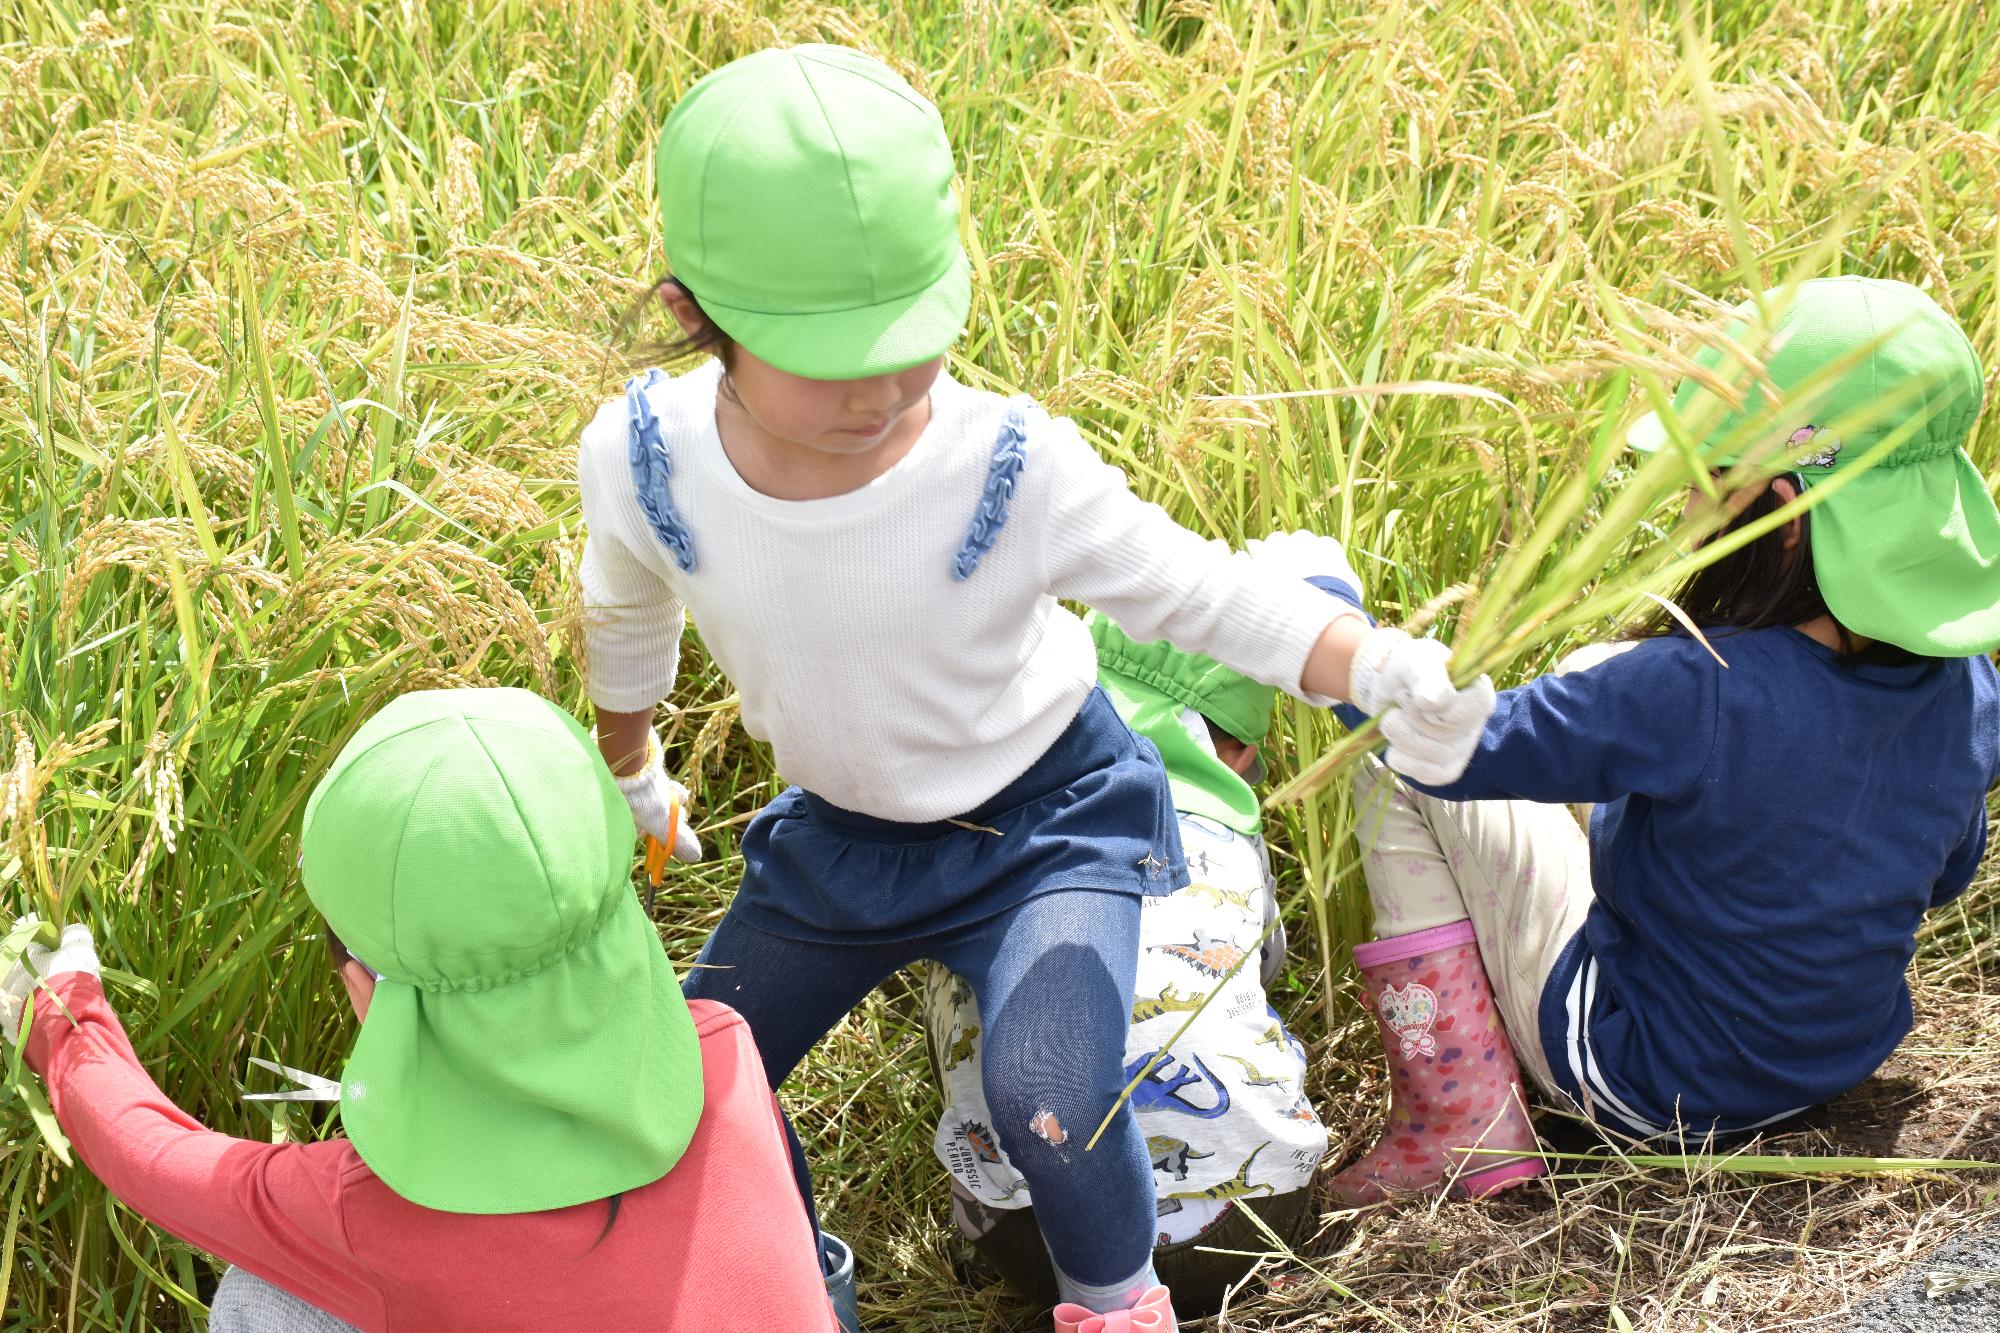 緑の帽子を被った刈り取った稲を掴んで畔に上がろうとする園児と刈り取り中の園児達